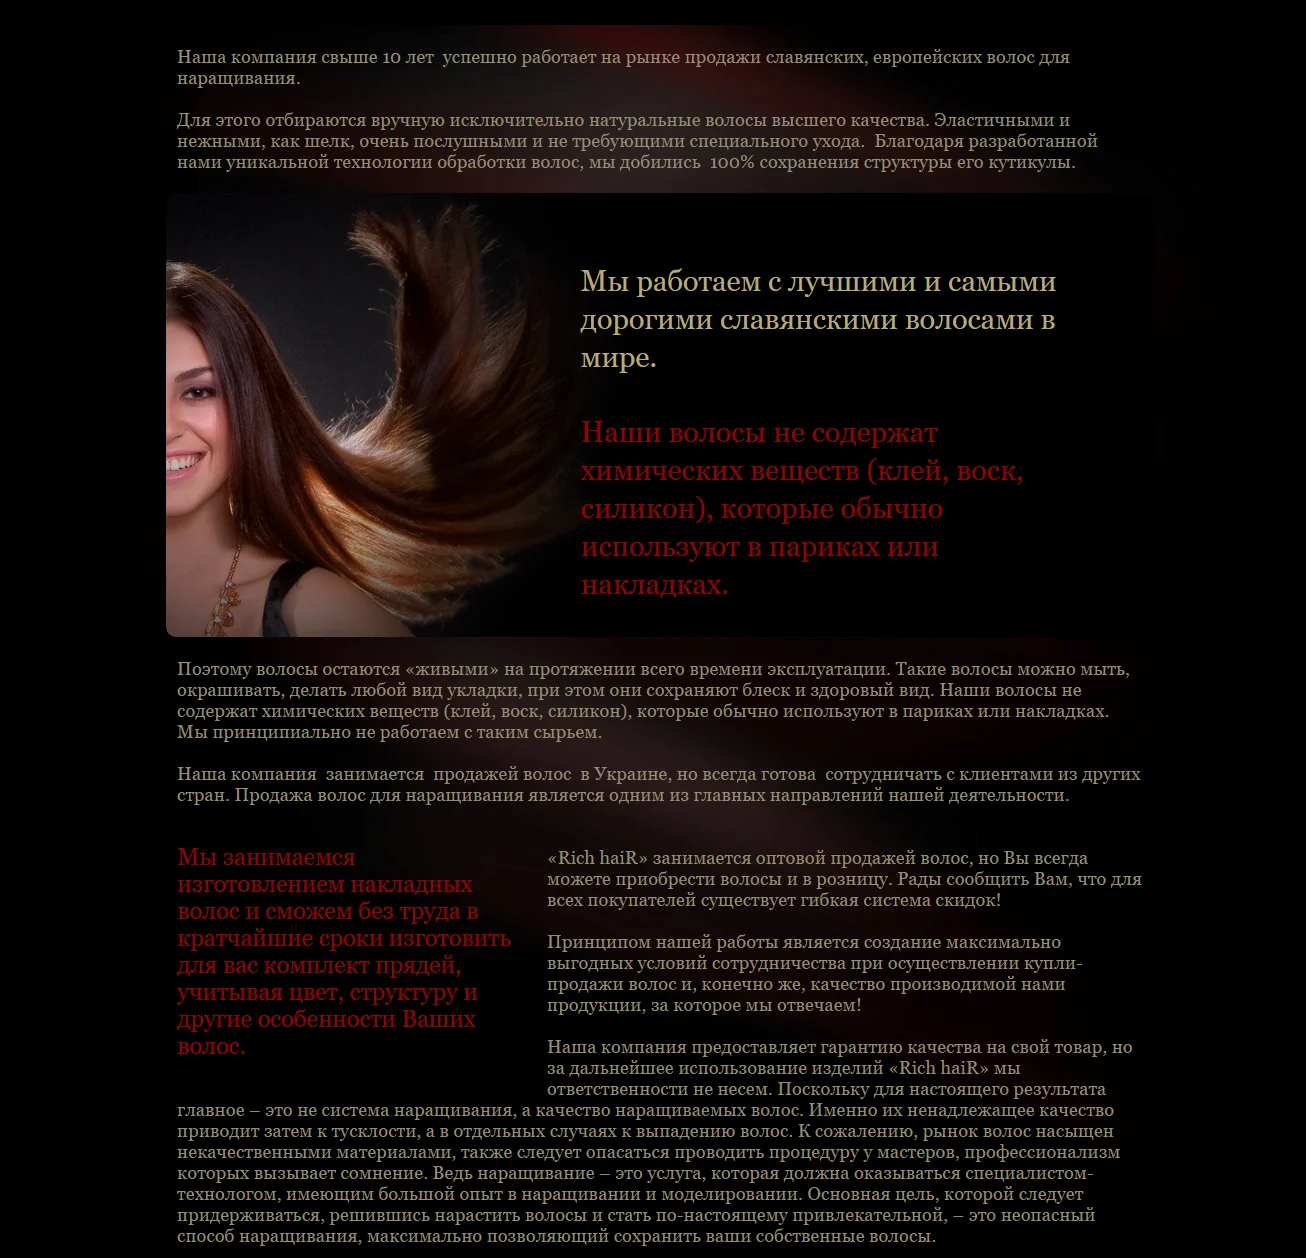 Створення інтернет-магазину волосся «Rich&nbsp;Hair» - Про нас (2)